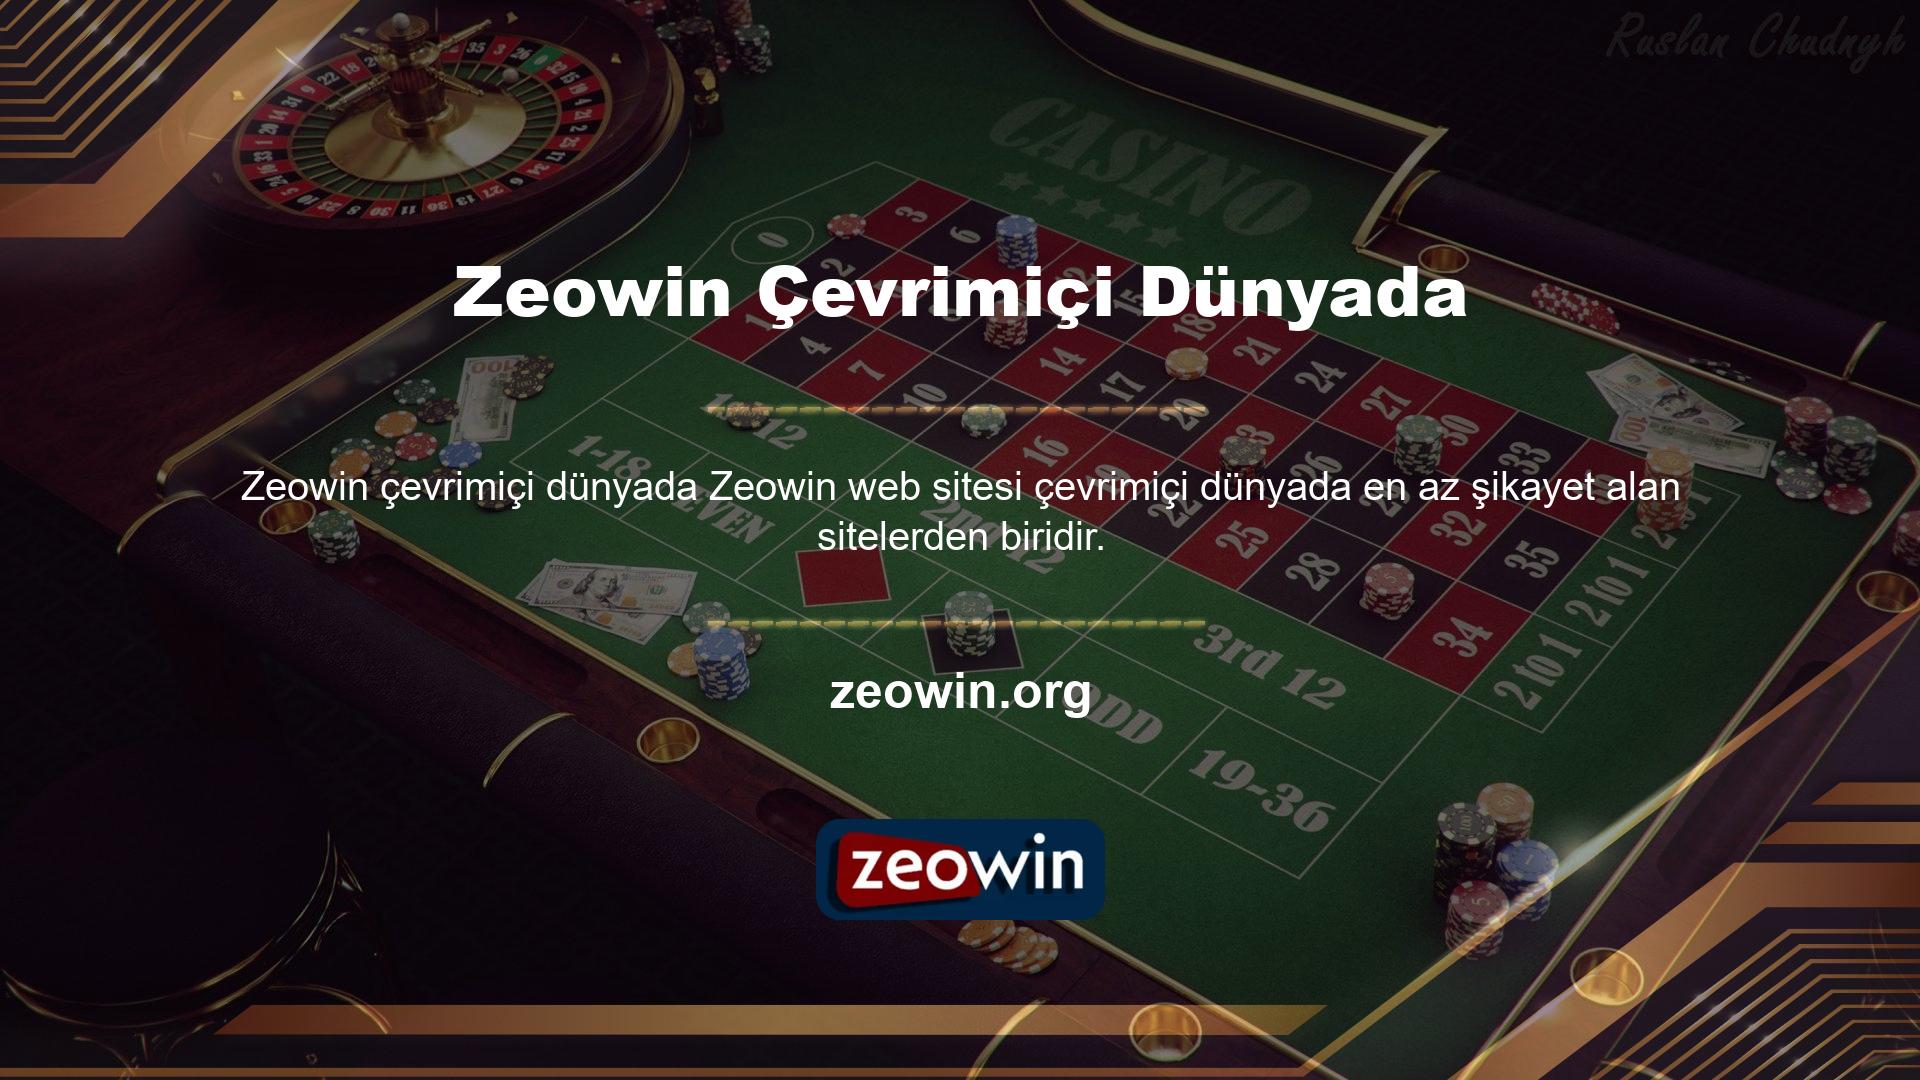 Çevrimiçi şikayetlerin çoğunluğu yasa dışı hizmetler sunan Casino web sitelerine yöneliktir